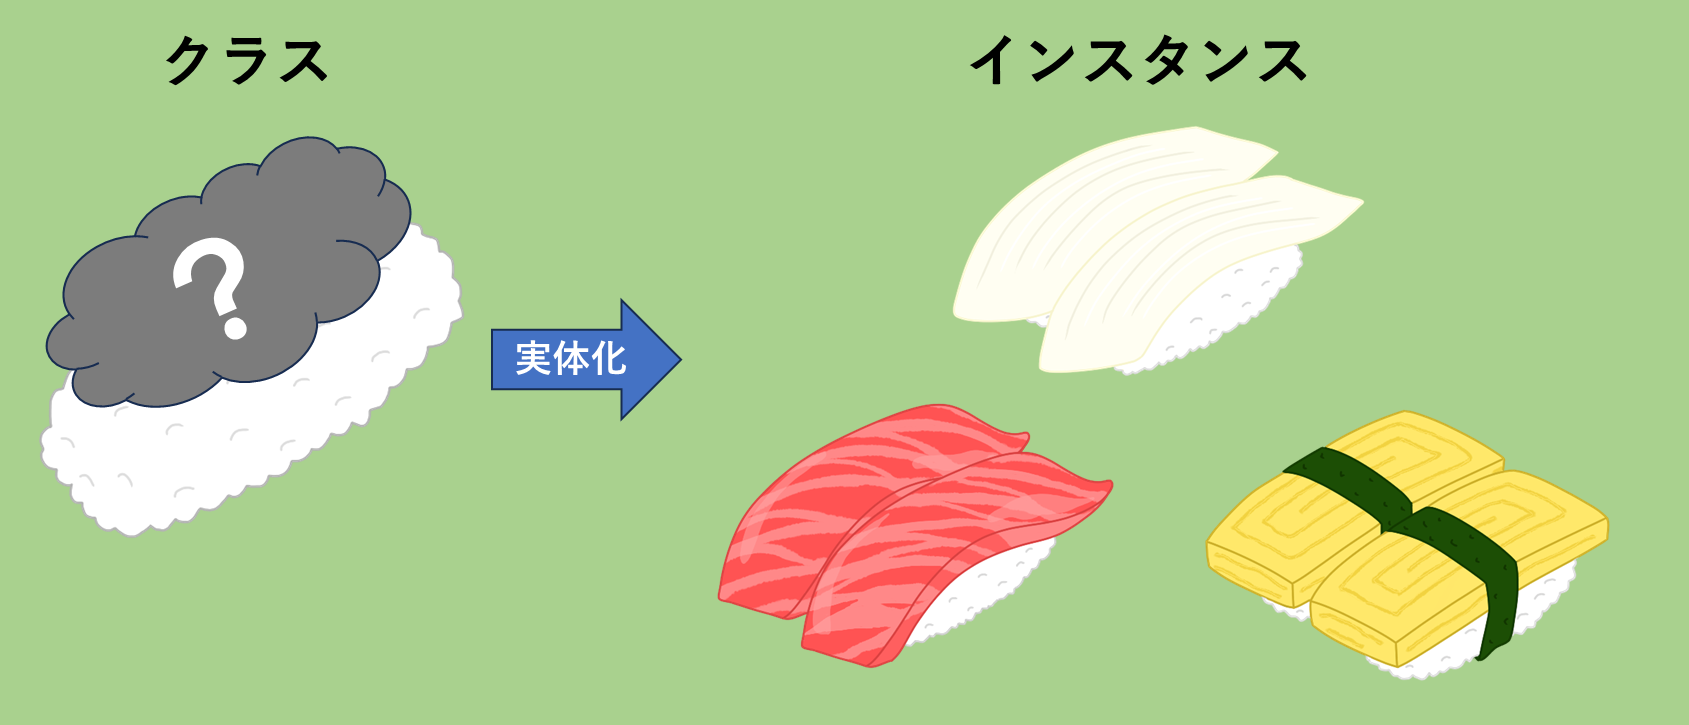 クラスとインスタンスを寿司で例えた図